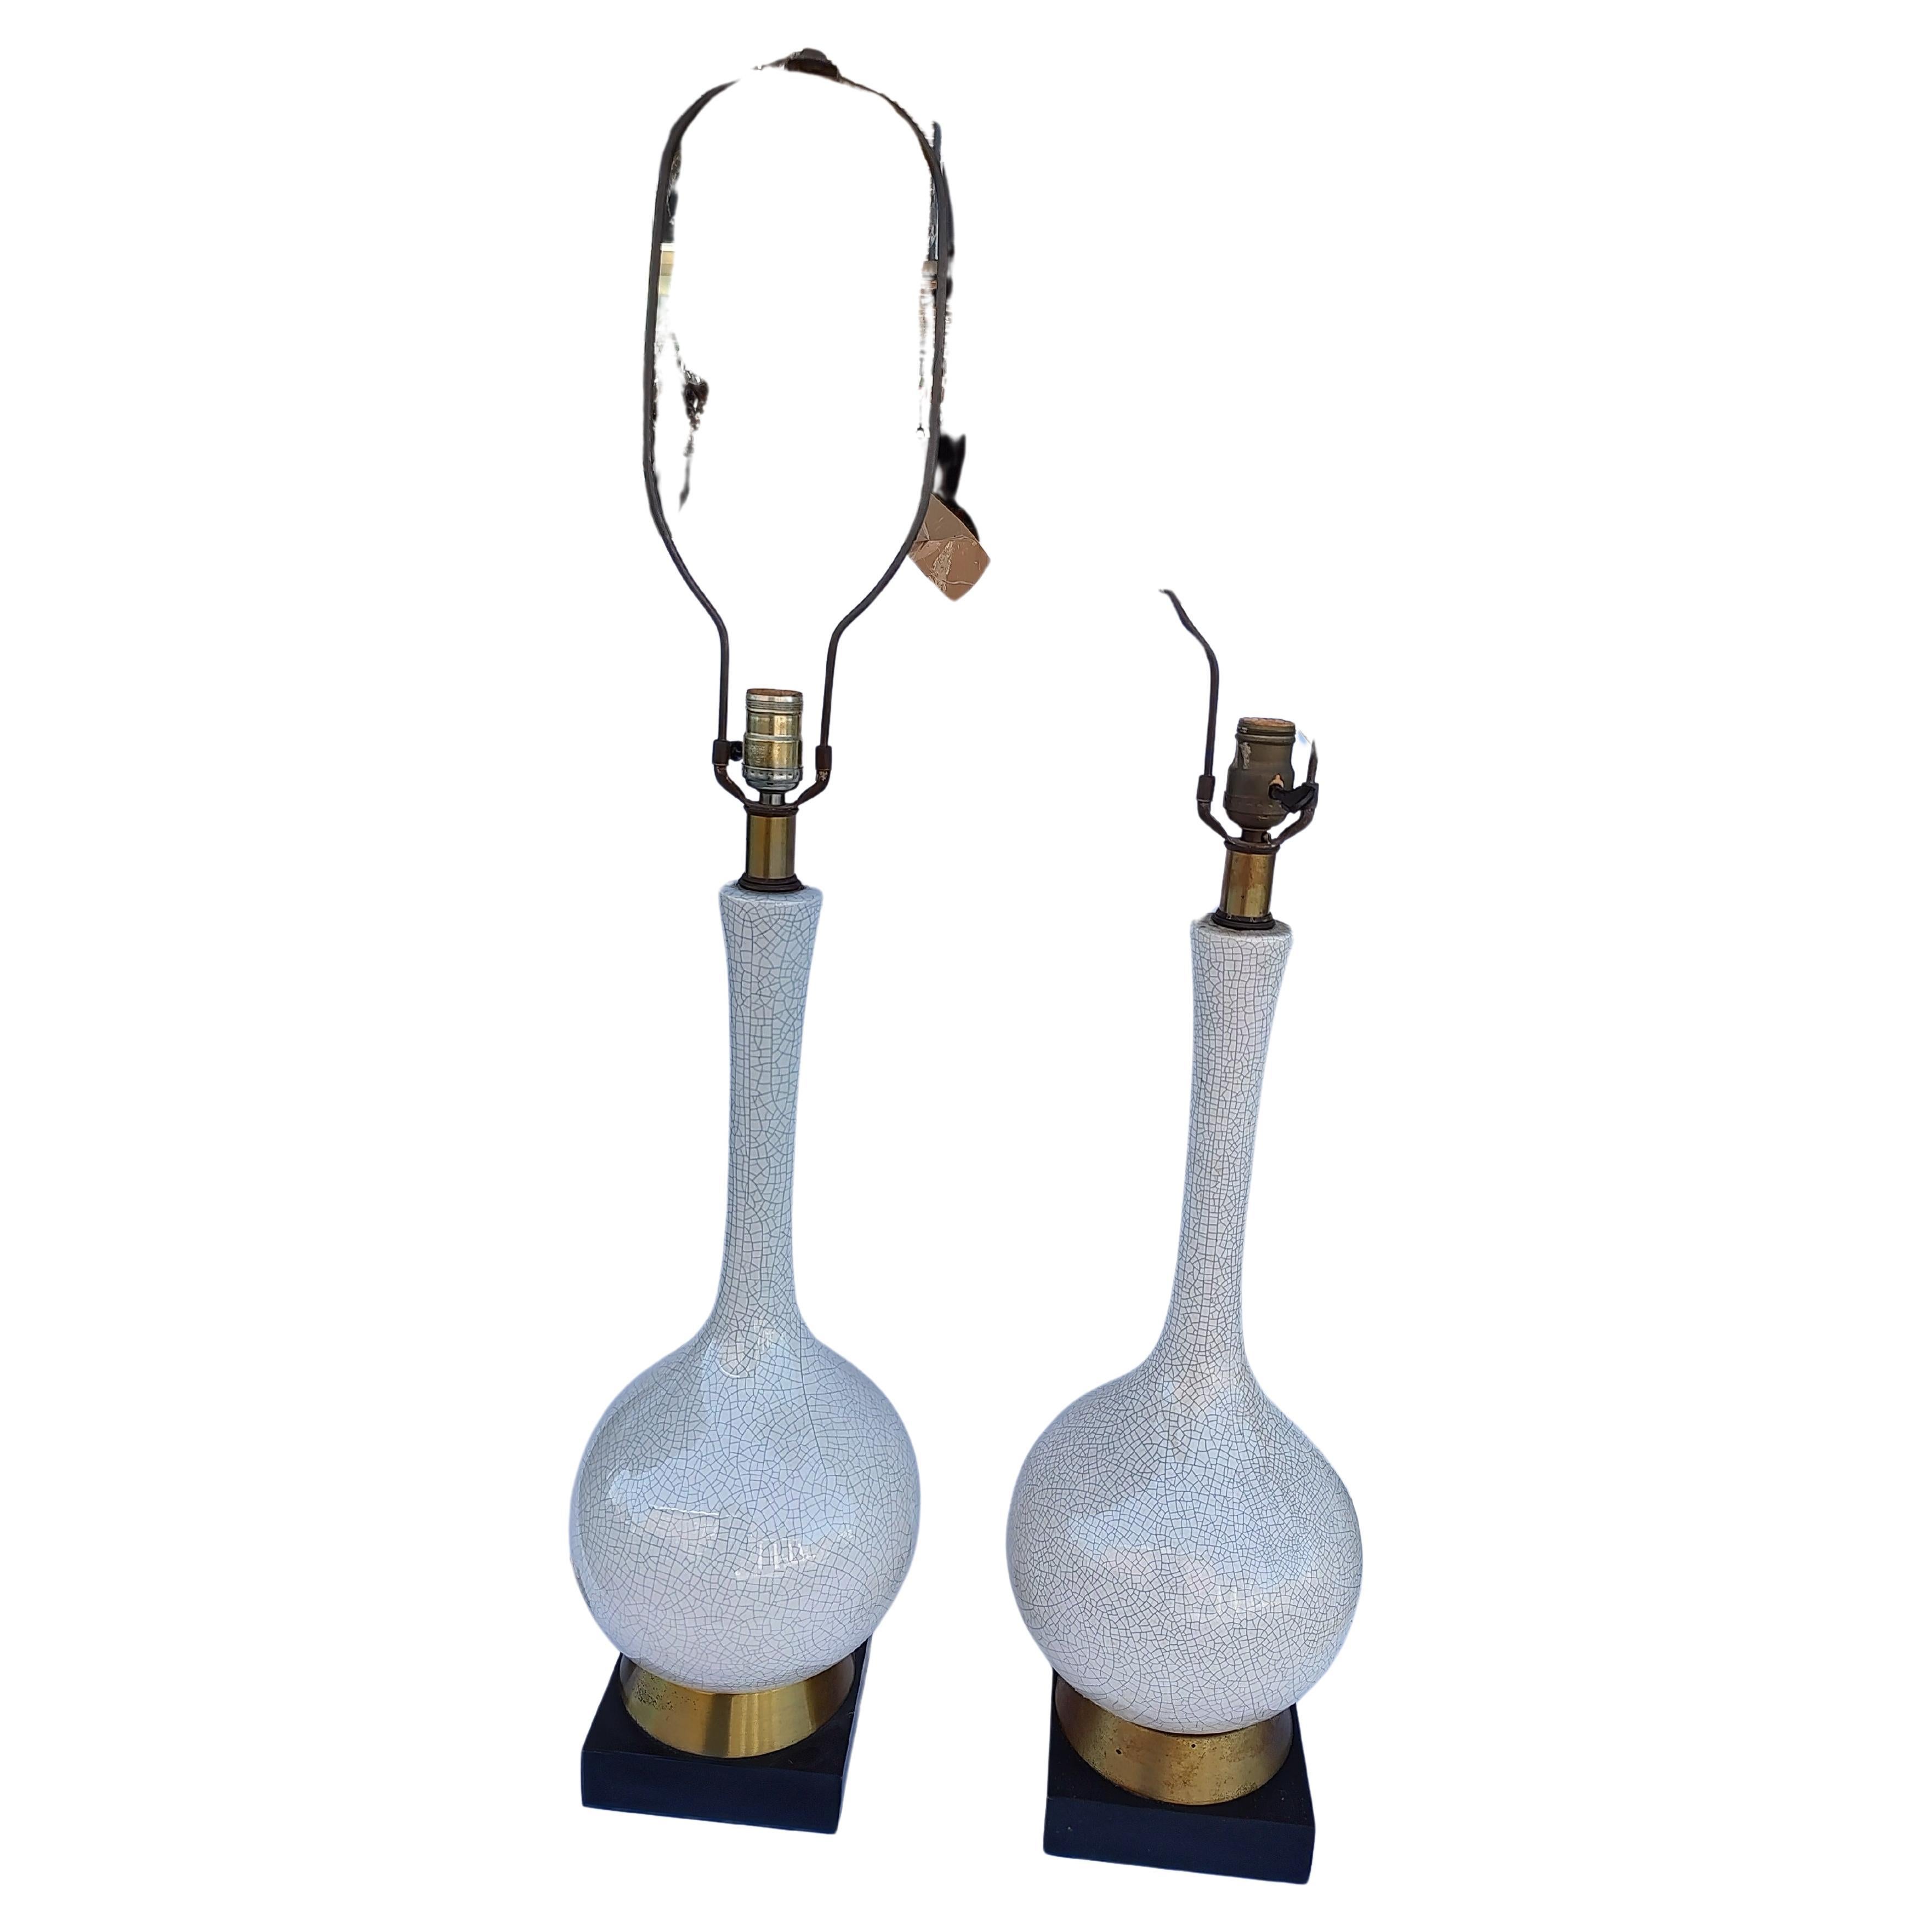 Einfaches und elegantes Paar Mid Century Modern Craquelé-Glasur-Lampen. In ausgezeichnetem Vintage-Zustand mit minimalen Gebrauchsspuren. Die Originalverkabelung ist intakt und in gutem Zustand. Kann als Paket verschickt werden.